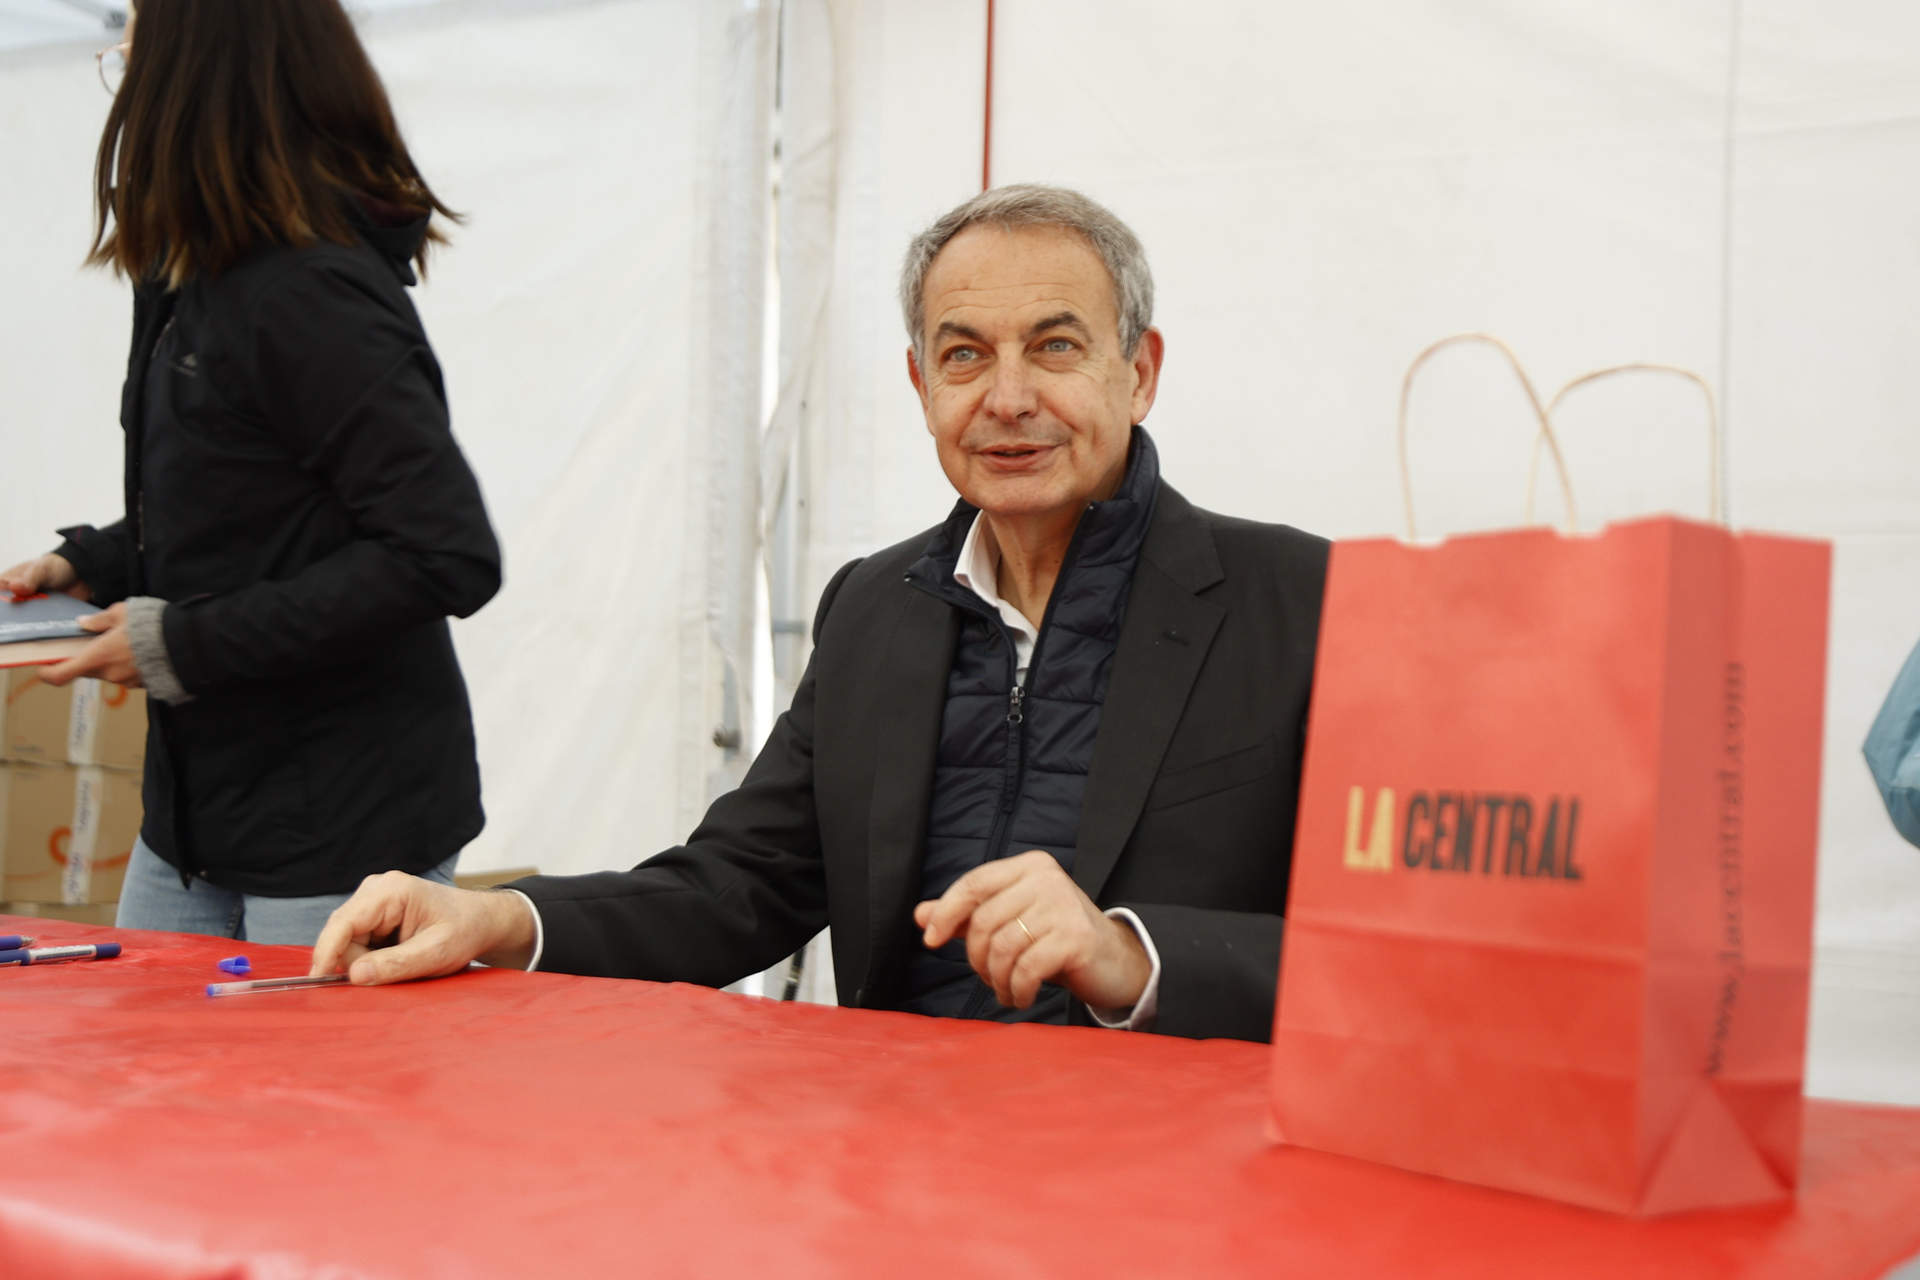 Zapatero sobre si ha hablado mucho últimamente con Puigdemont: 